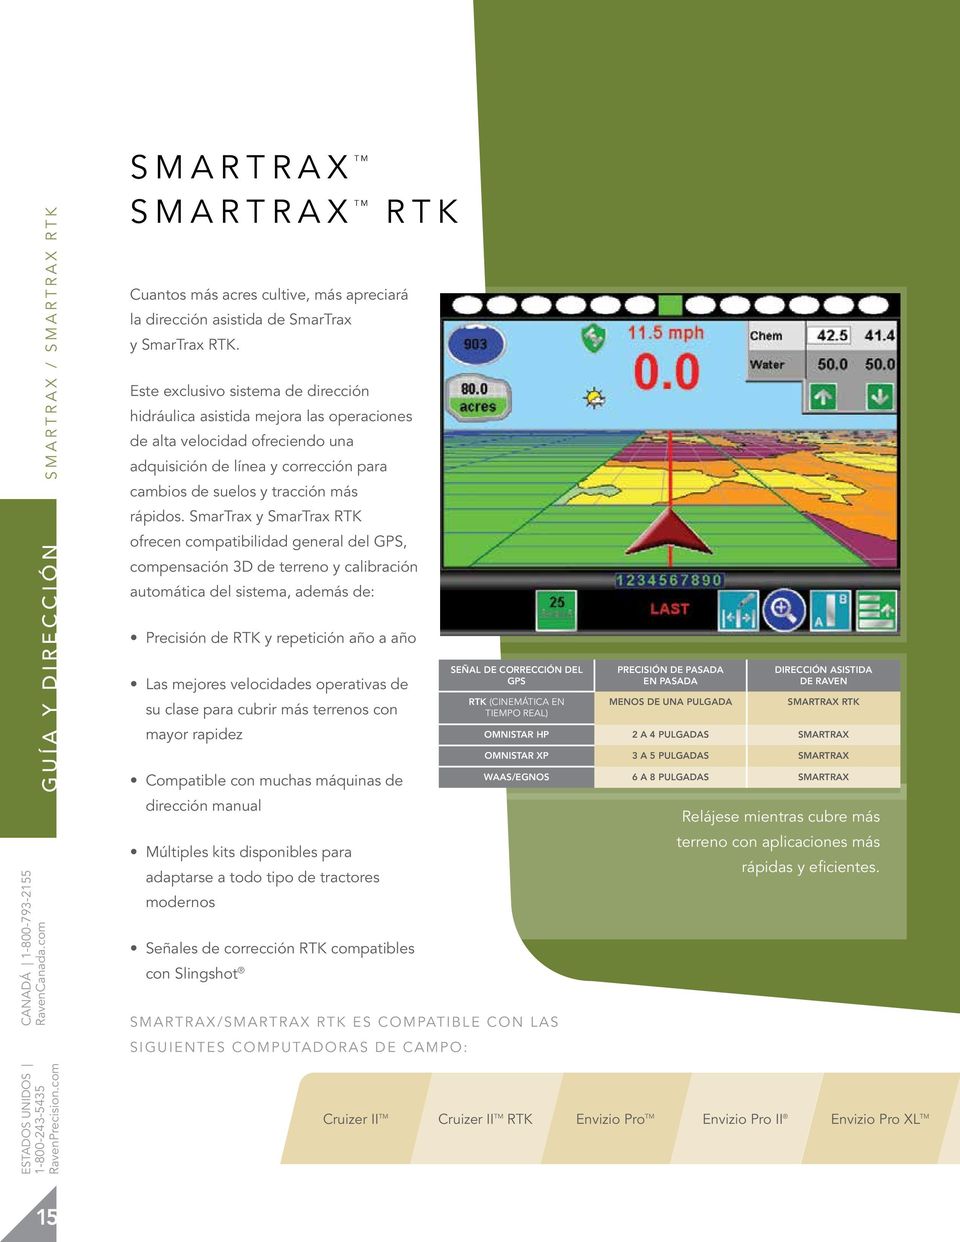 SmarTrax y SmarTrax RTK ofrecen compatibilidad general del GPS, compensación 3D de terreno y calibración automática del sistema, además de: Precisión de RTK y repetición año a año Las mejores